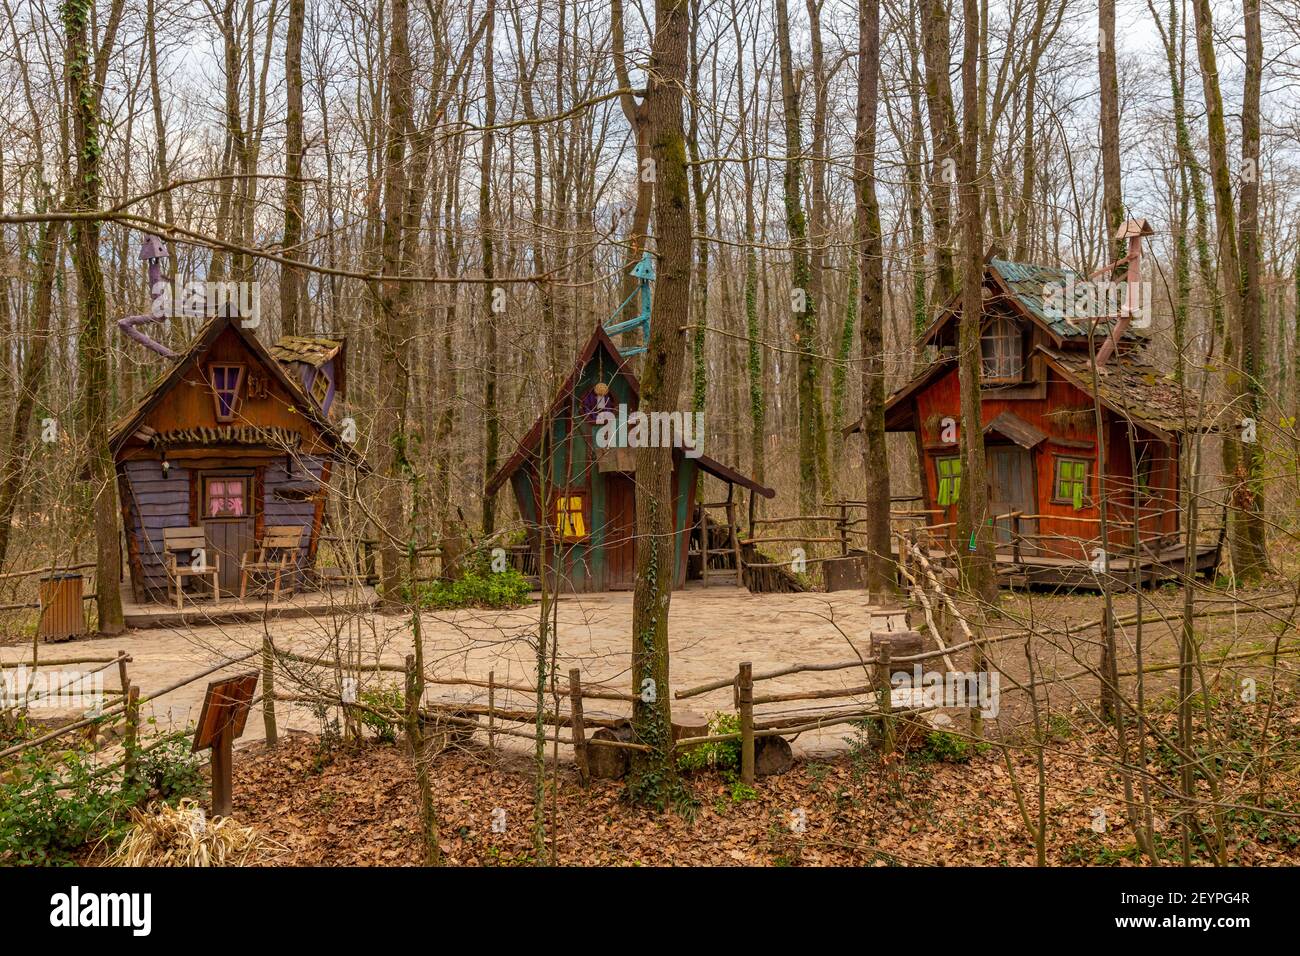 Ormanyan Izmit City Park, bunte Holzhäuser für den Tourismus inspiriert vom Film der Hobbit, März 6, Kocaeli, Türkei Stockfoto